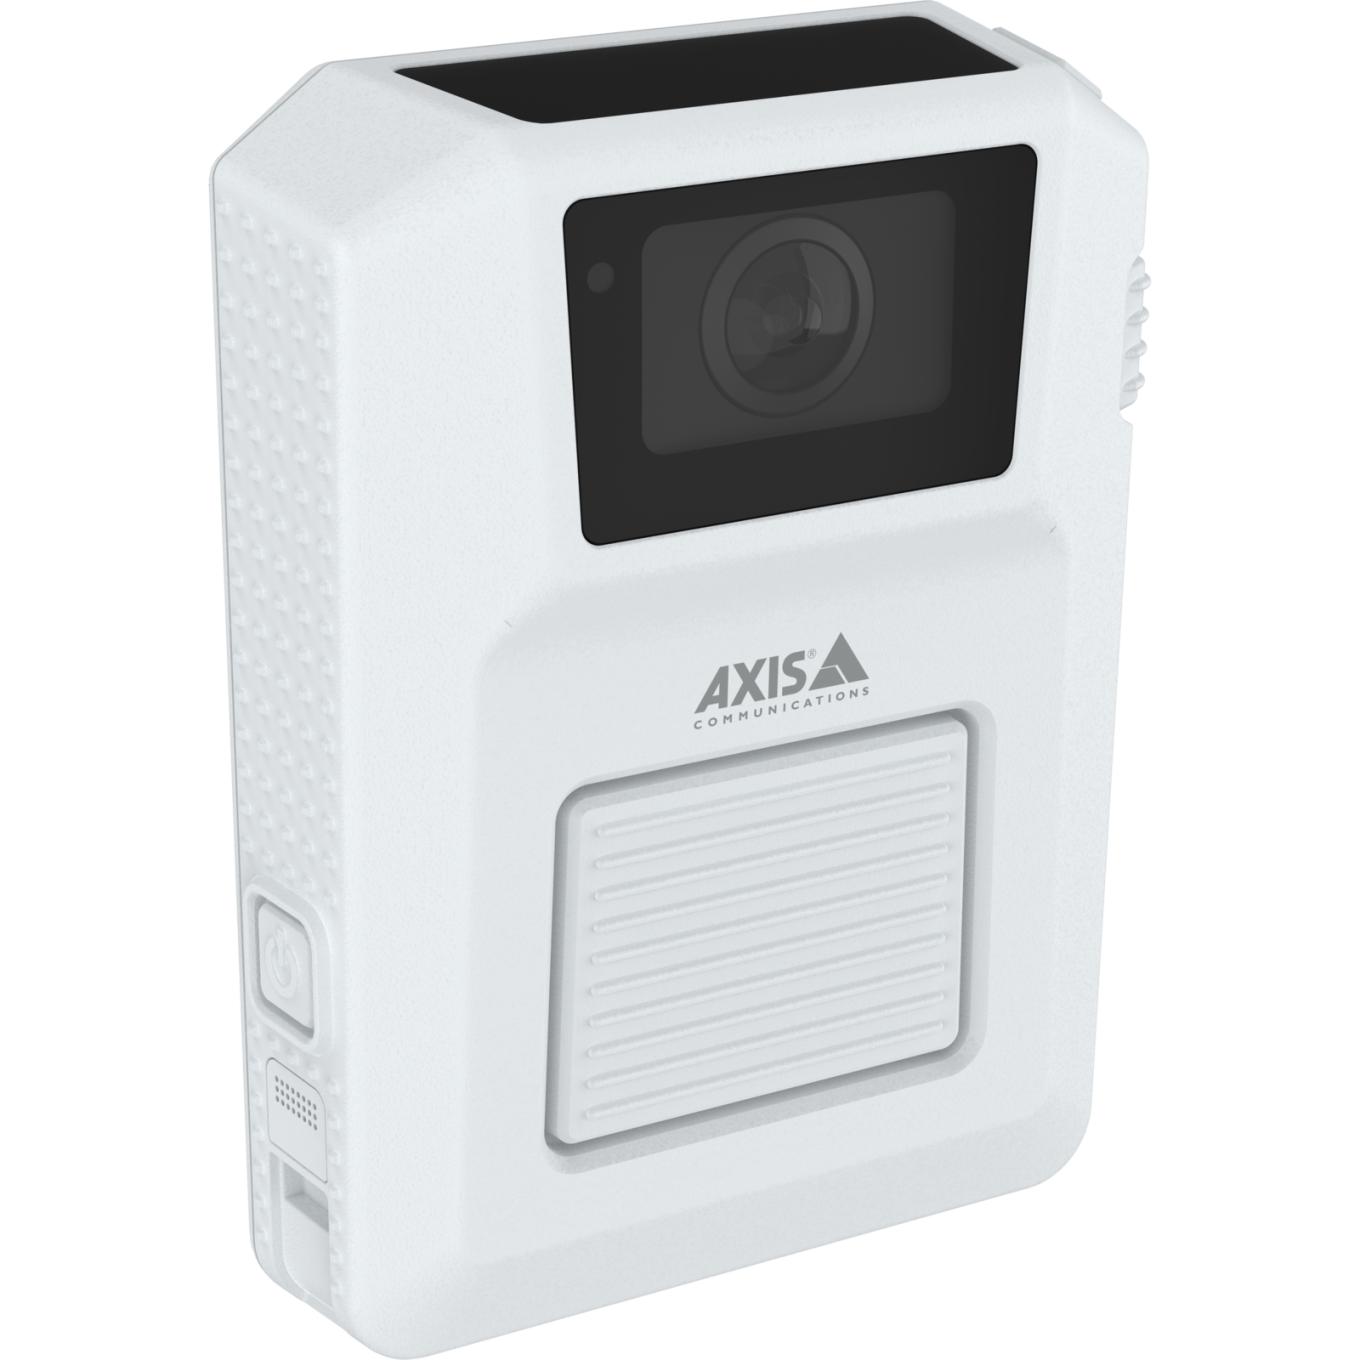 AXIS W102 Body Worn Camera blanca, lado derecho